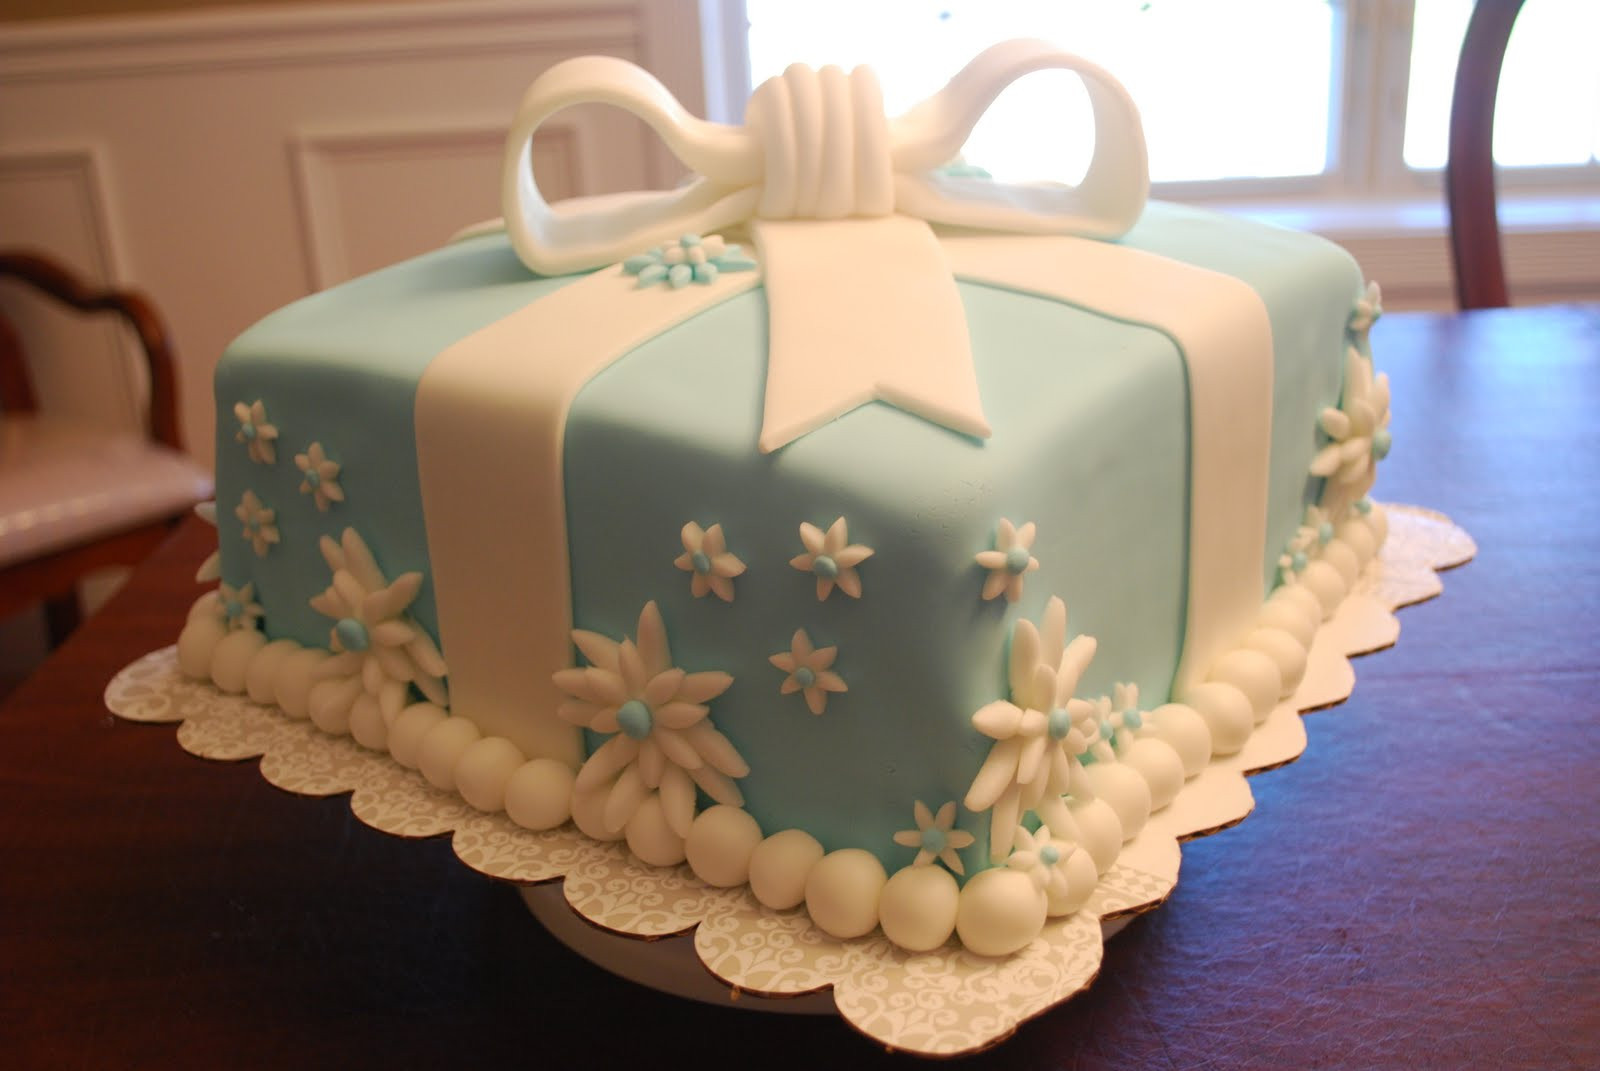 Happy Birthday Tiffany Cake
 The Baking Sheet Another Tiffany Box Cake